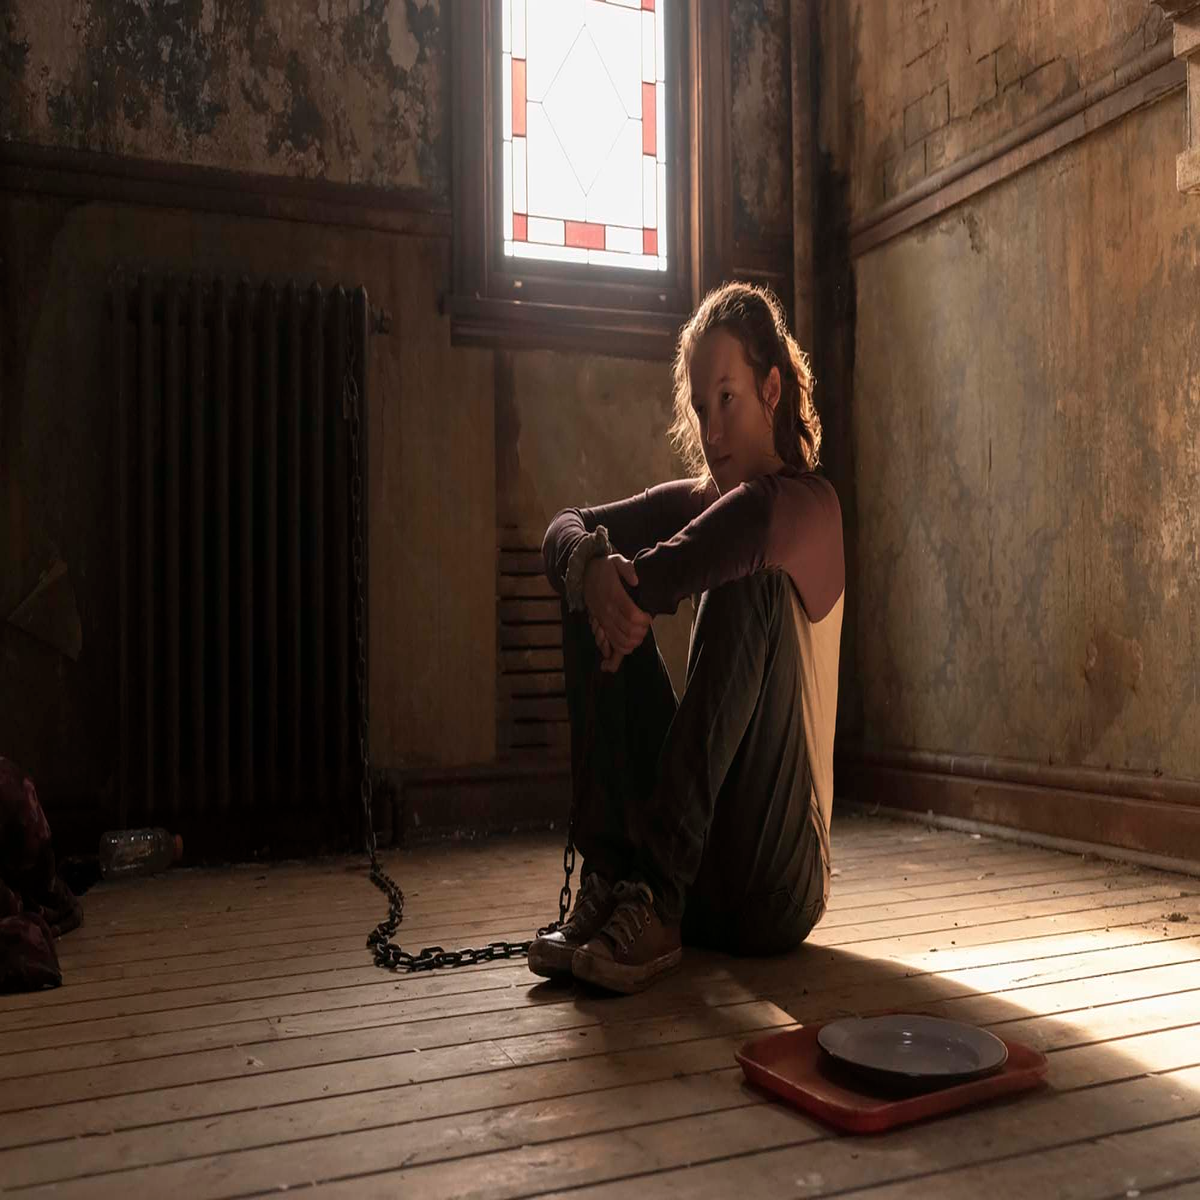 Bella Ramsey Cast As Ellie In HBO's The Last of Us Series